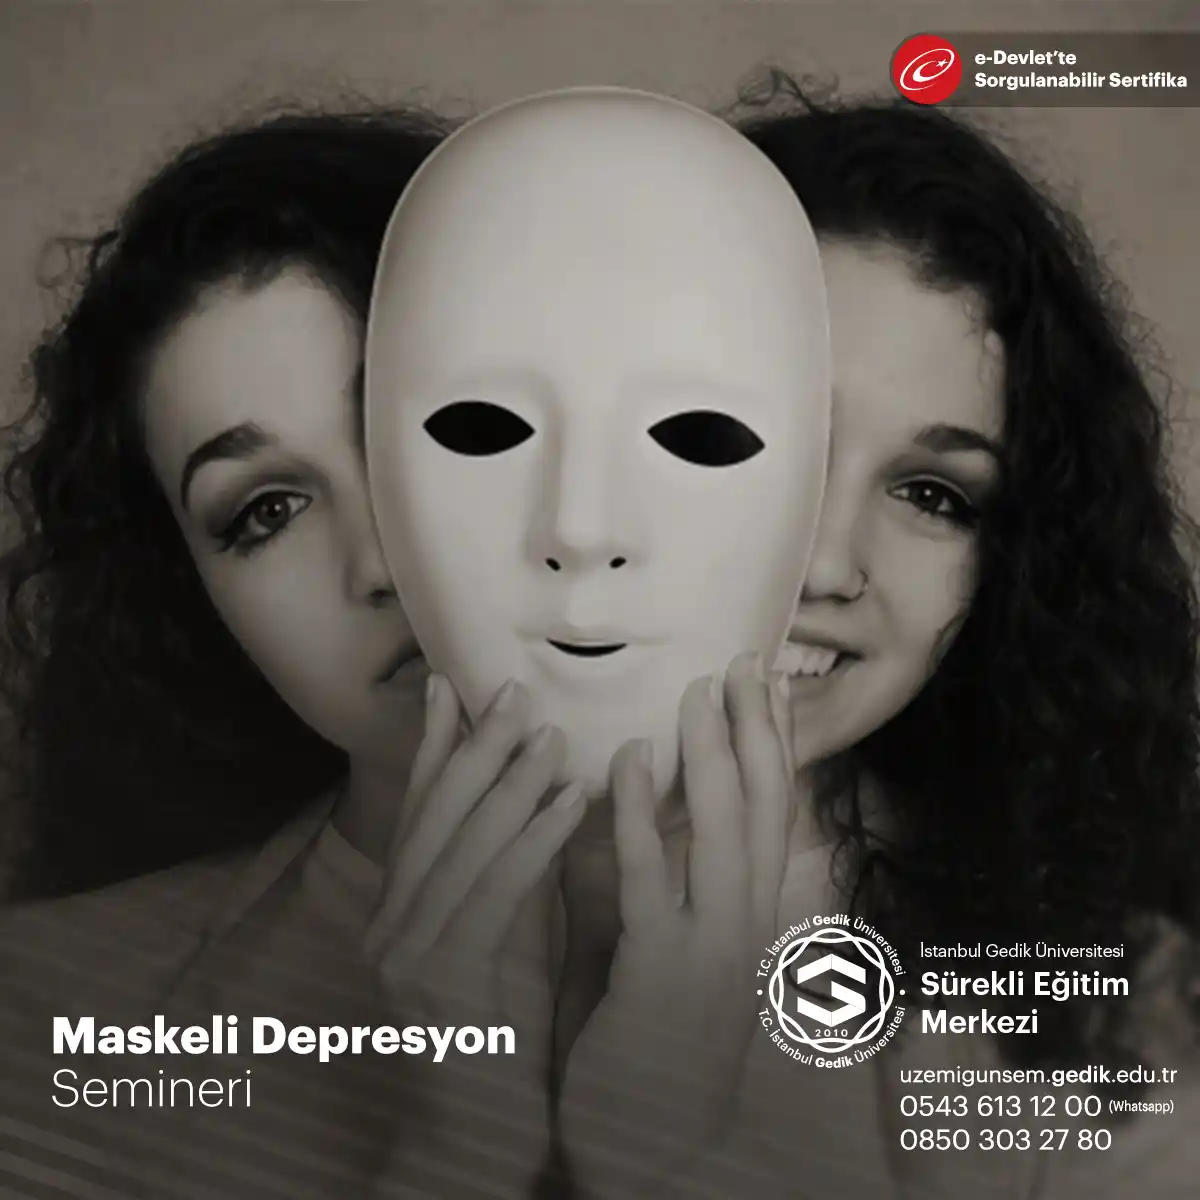 Maskeli depresyon, depresyon belirtilerini gizlemek veya başka belirtilerle maskelemek anlamına gelir.